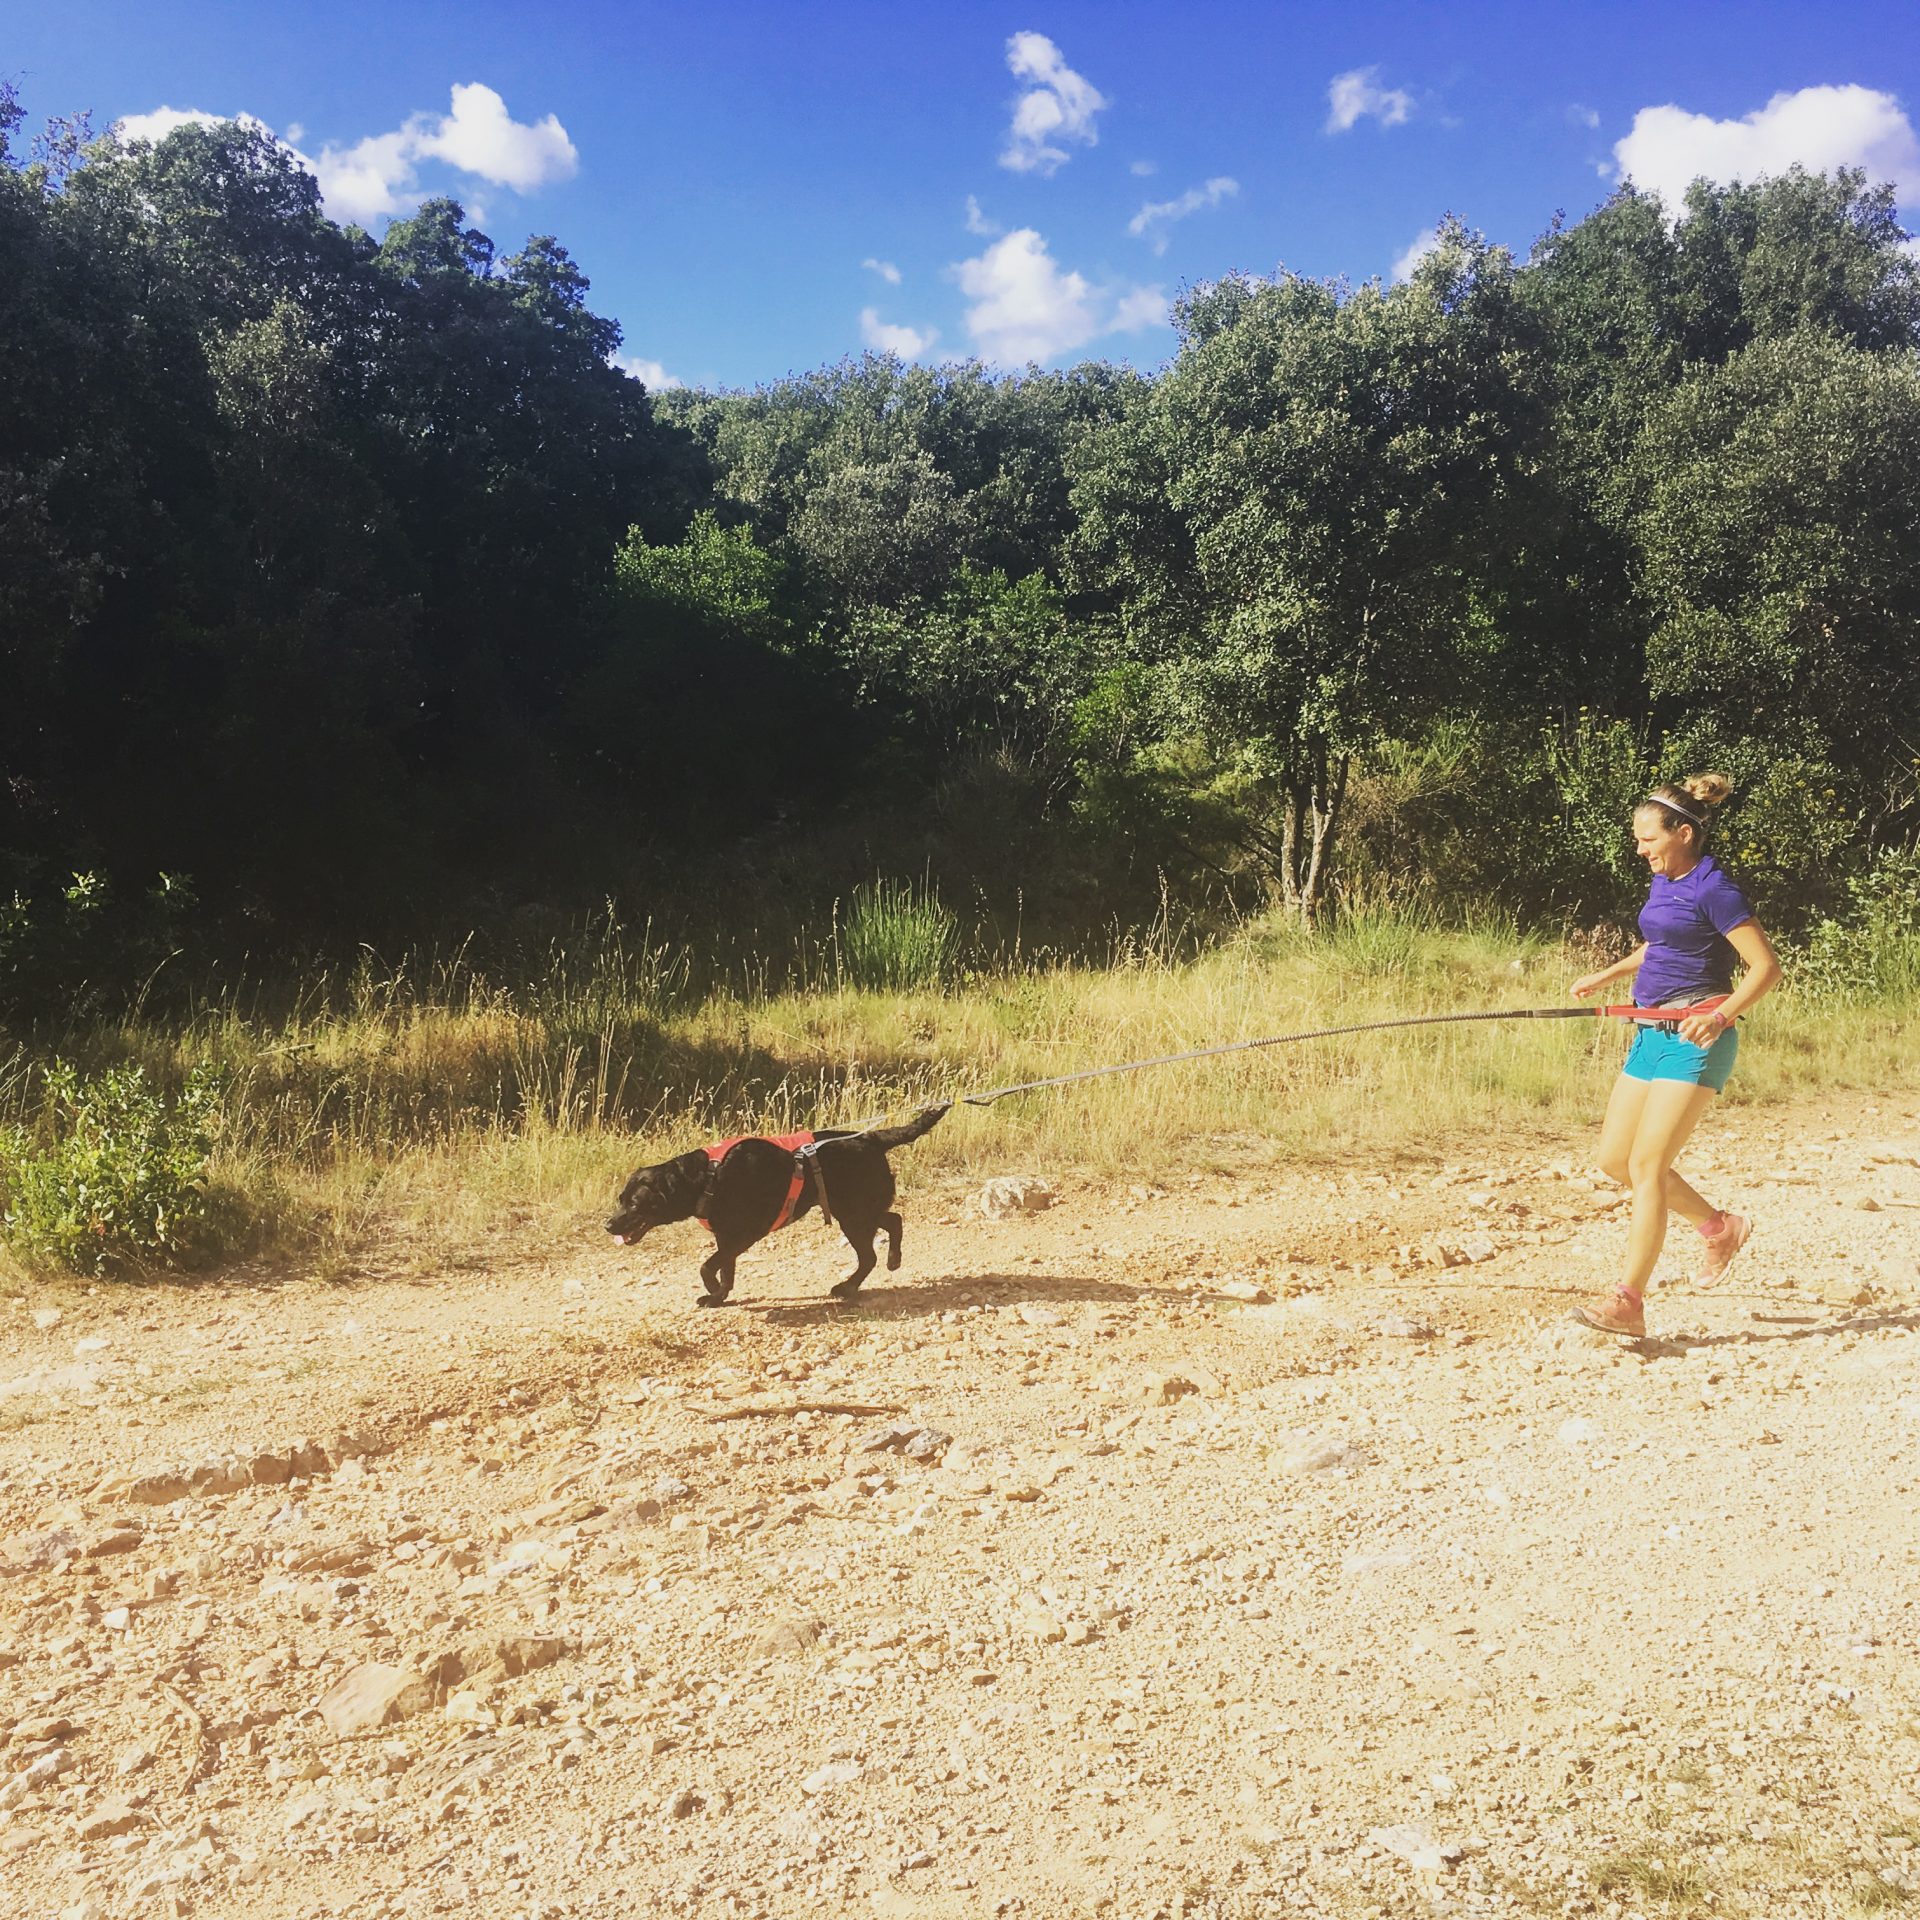 Cani-cross ou cani-trail - le bon matériel pour courir avec son chien